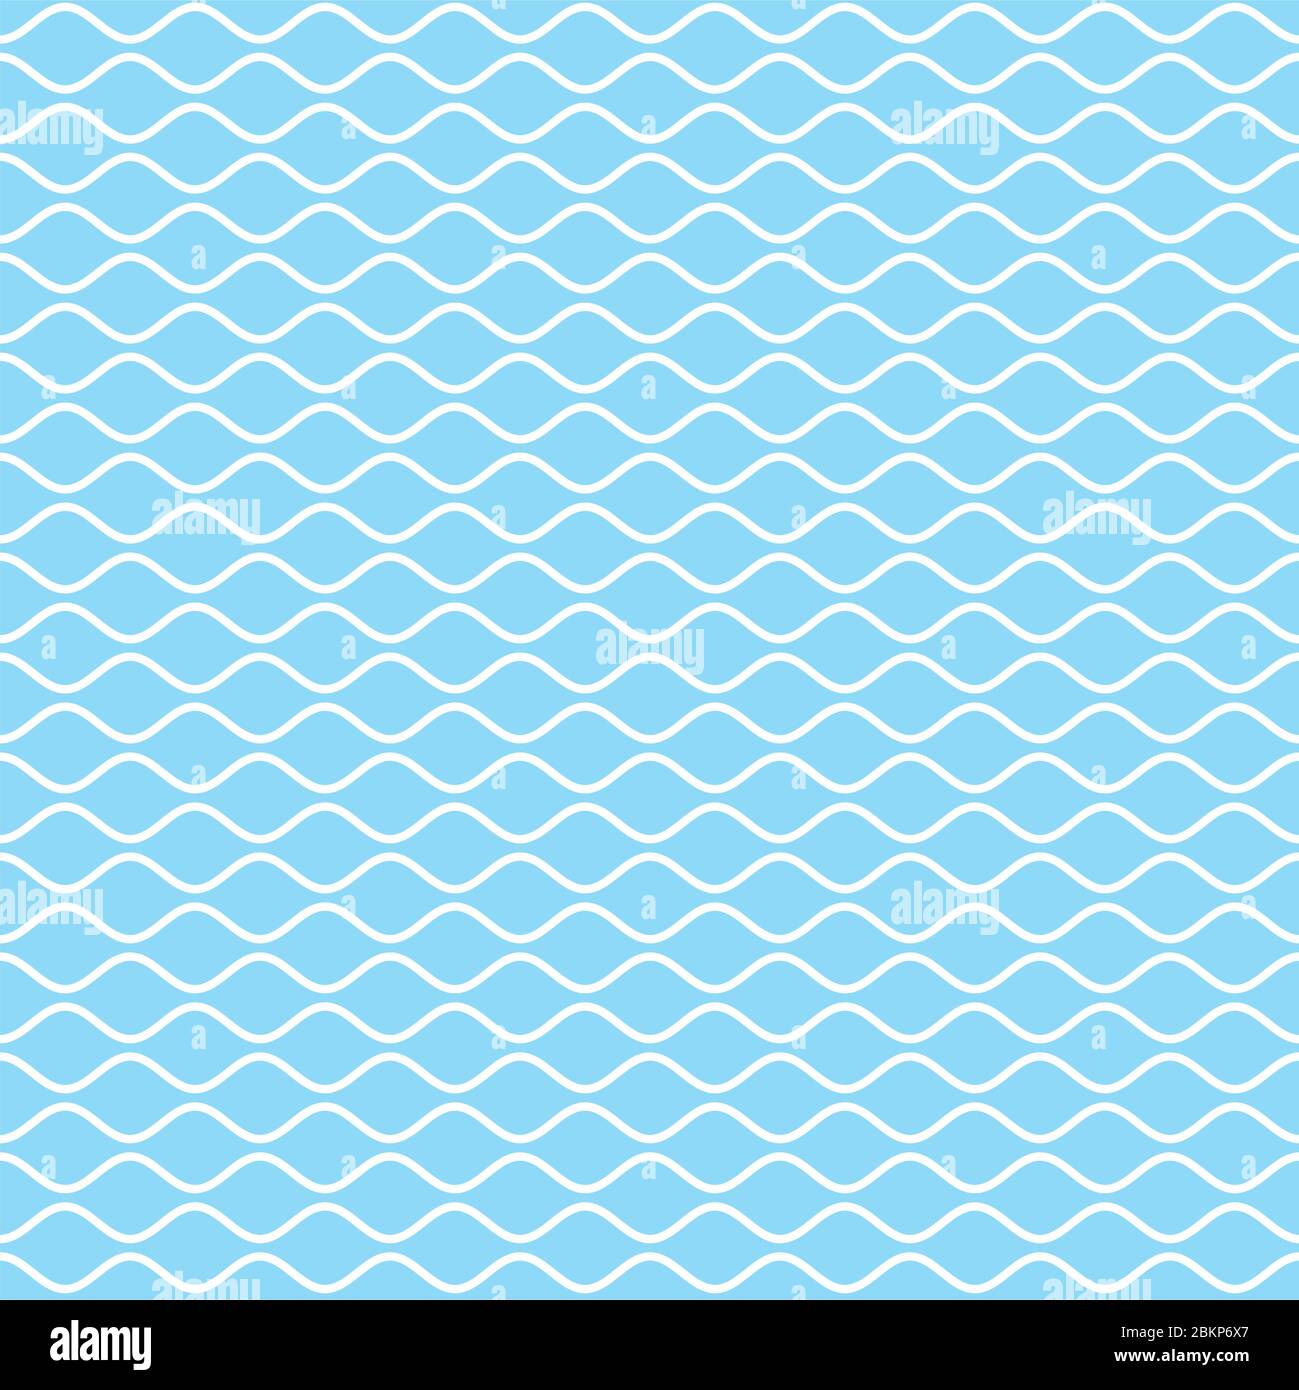 Wellenförmige Linie nahtloses Muster. Weiße Wellenlinien auf himmelblauem Hintergrund. Welligkeit marine Textur. Vektorgrafiken für Wellenhaftigkeit. Stock Vektor